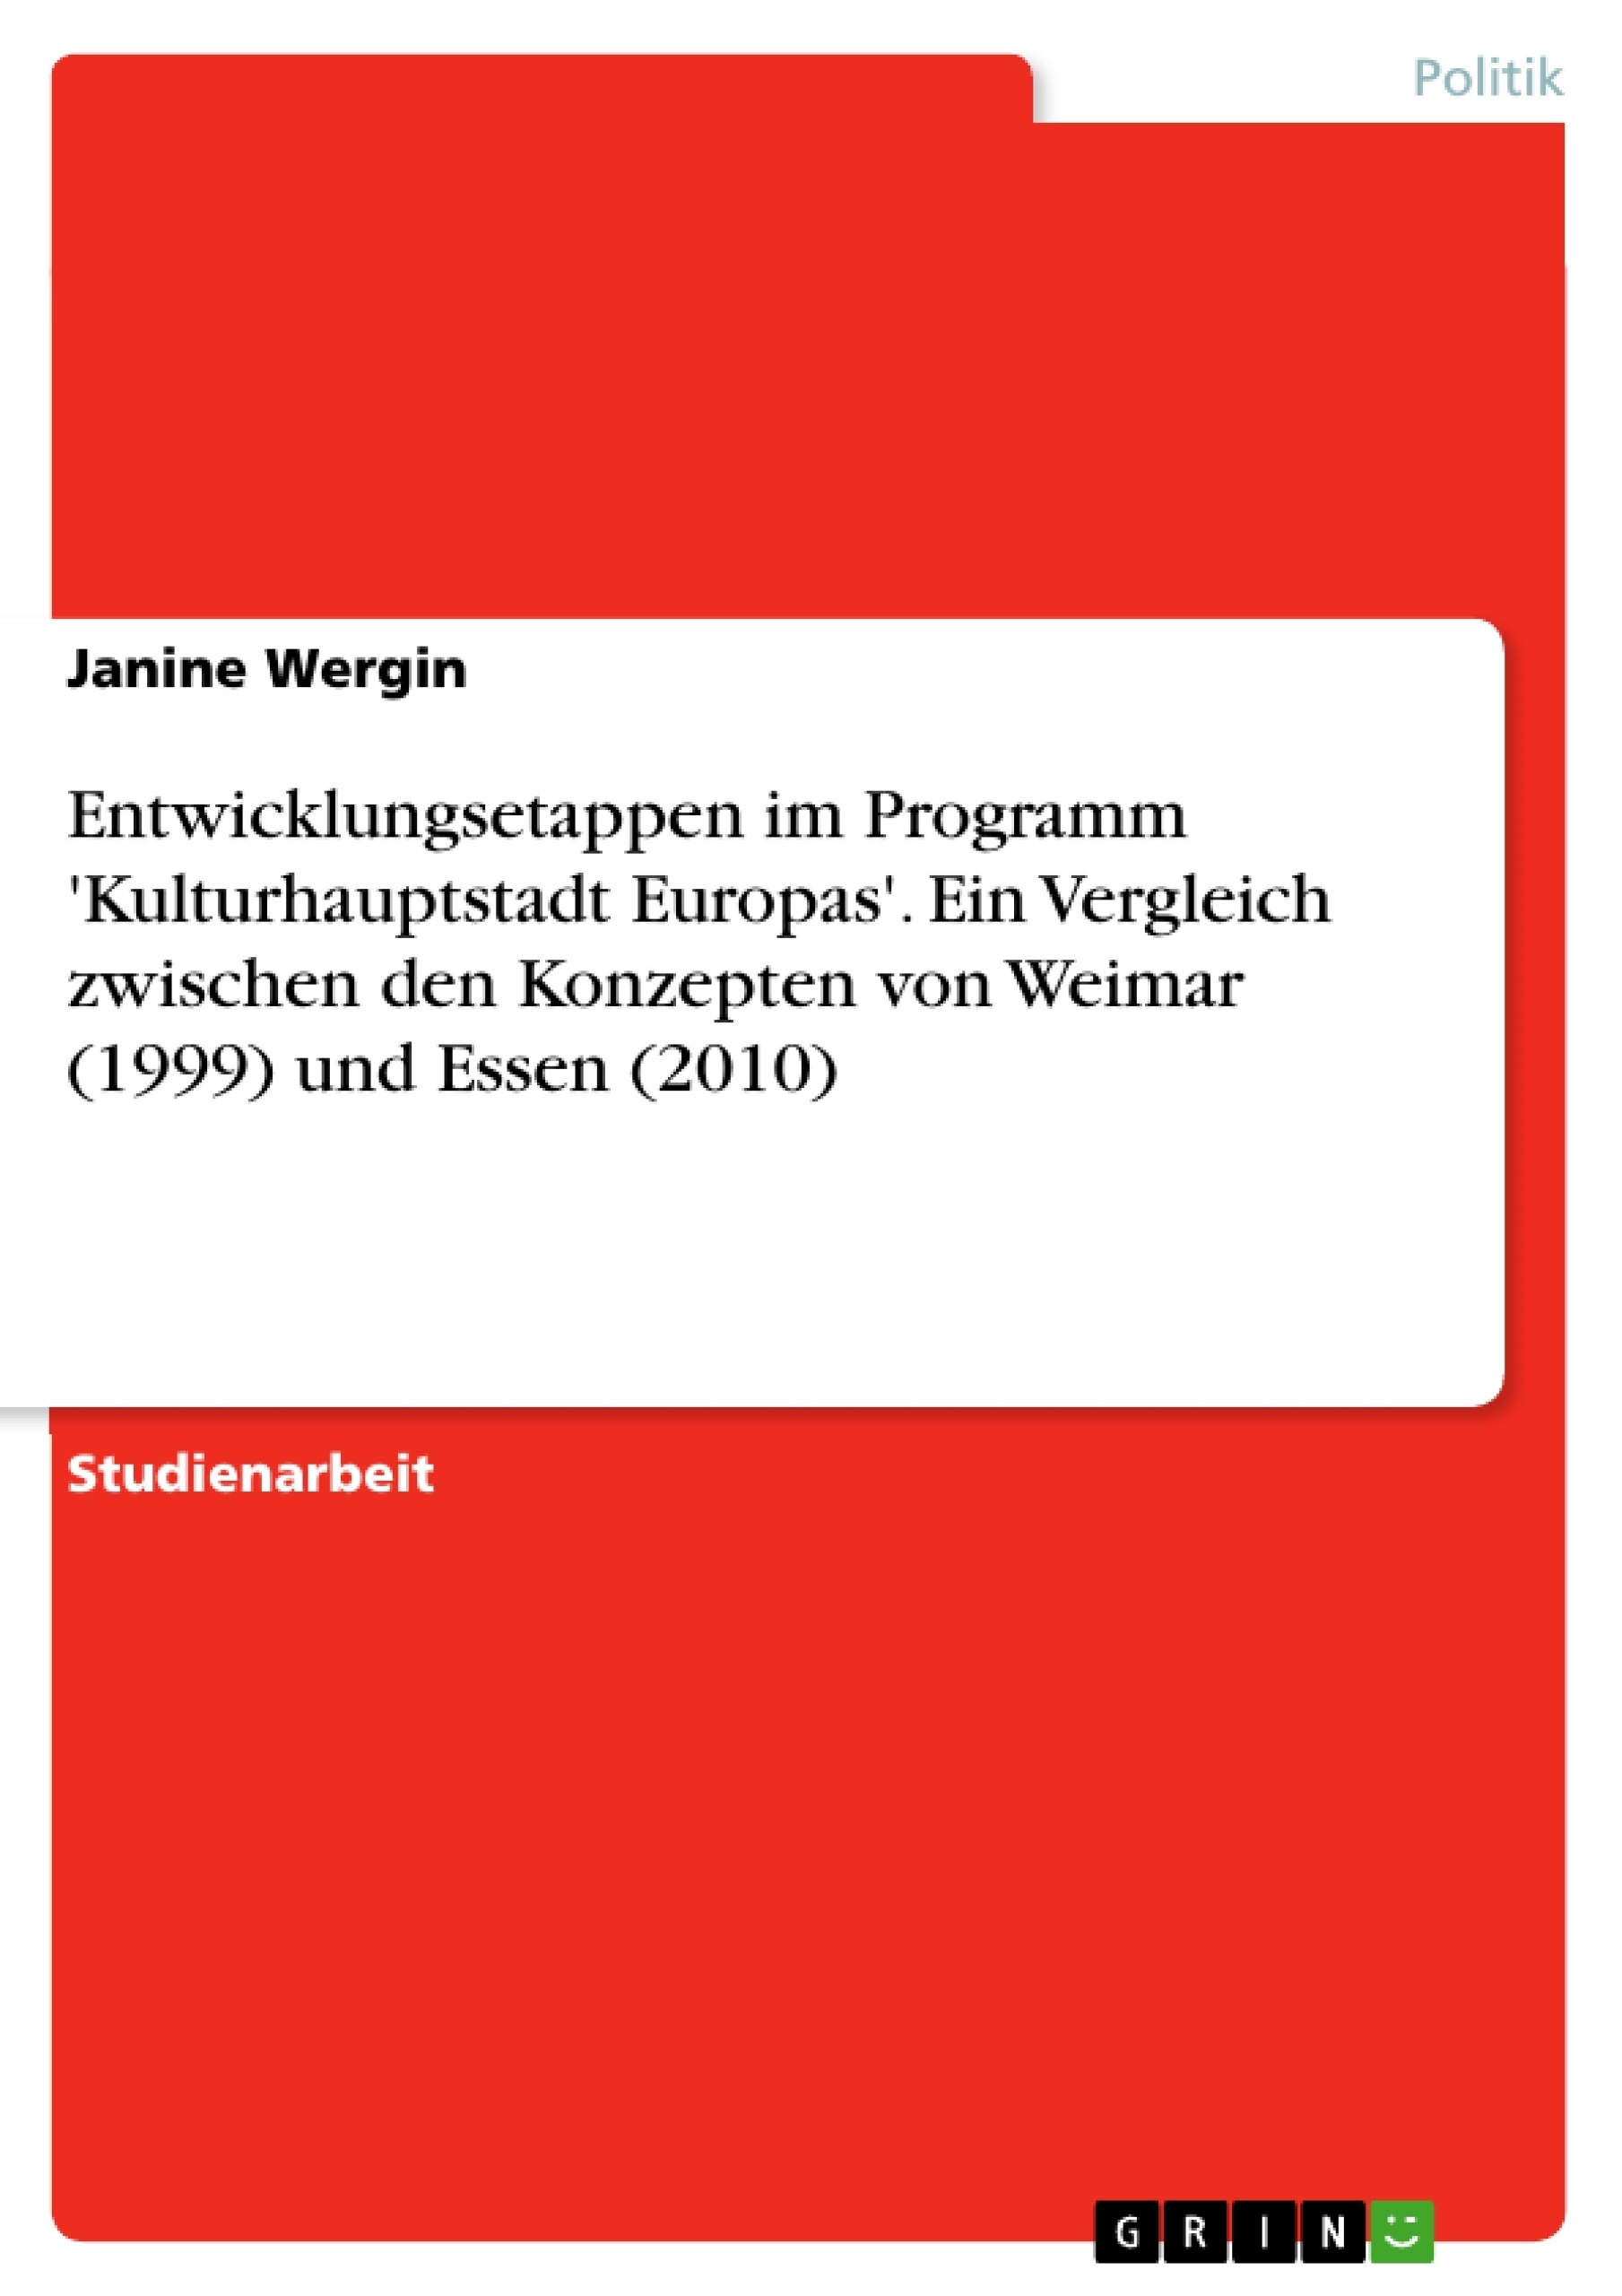 Título: Entwicklungsetappen im Programm 'Kulturhauptstadt Europas'. Ein Vergleich zwischen den Konzepten von Weimar (1999) und Essen (2010)